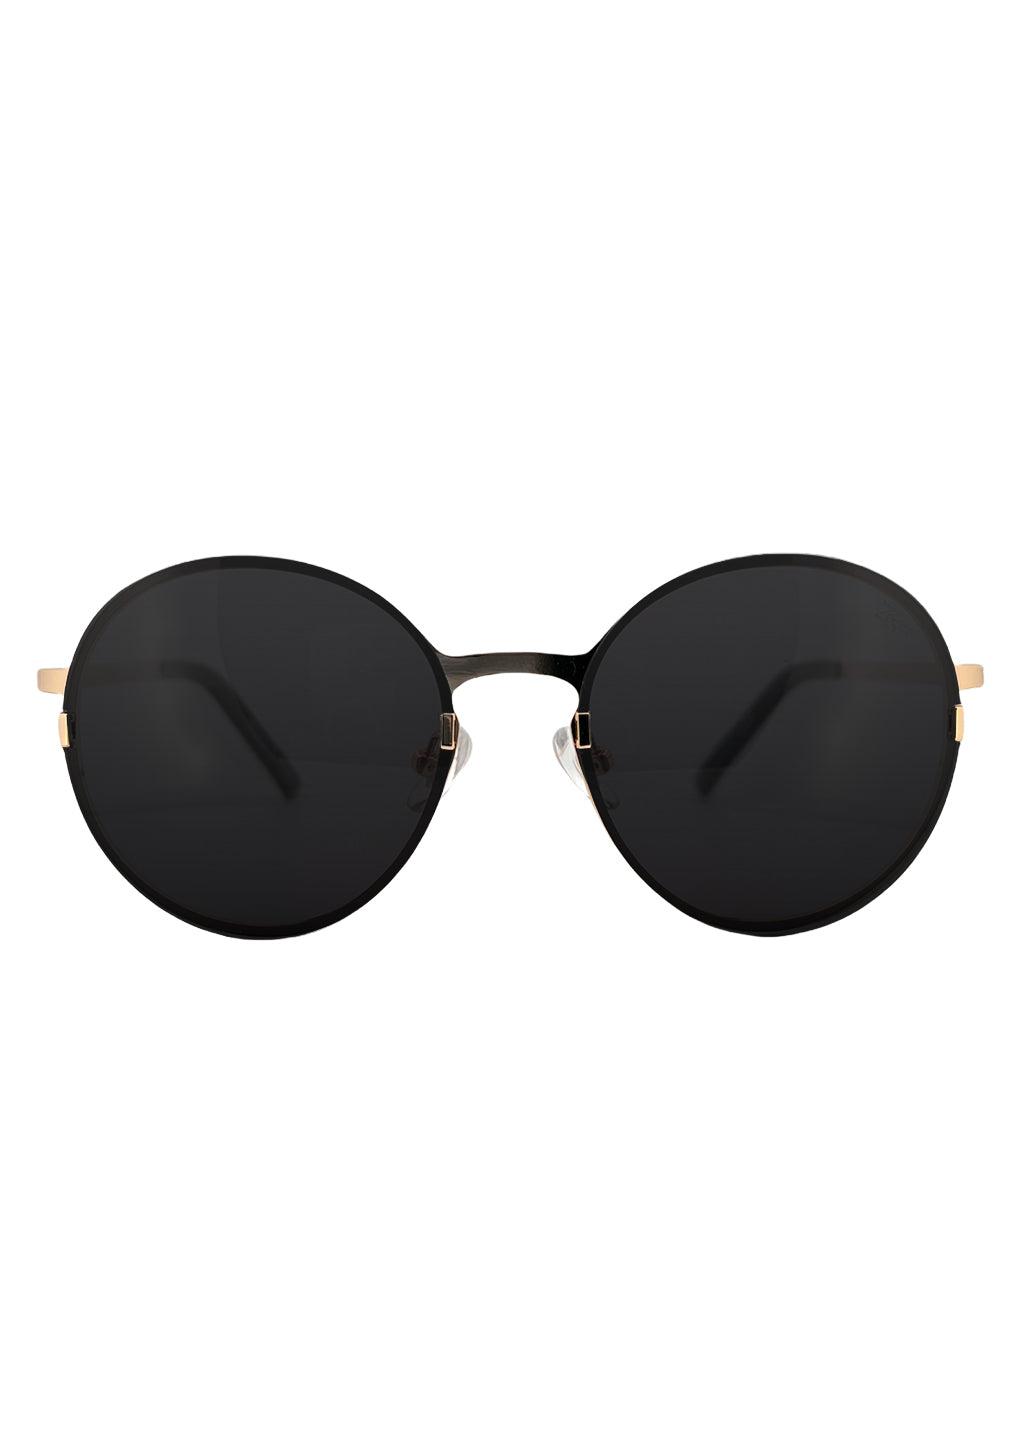 Titanium Round Sunglasses - V2 - 24K GOLD Plated-1